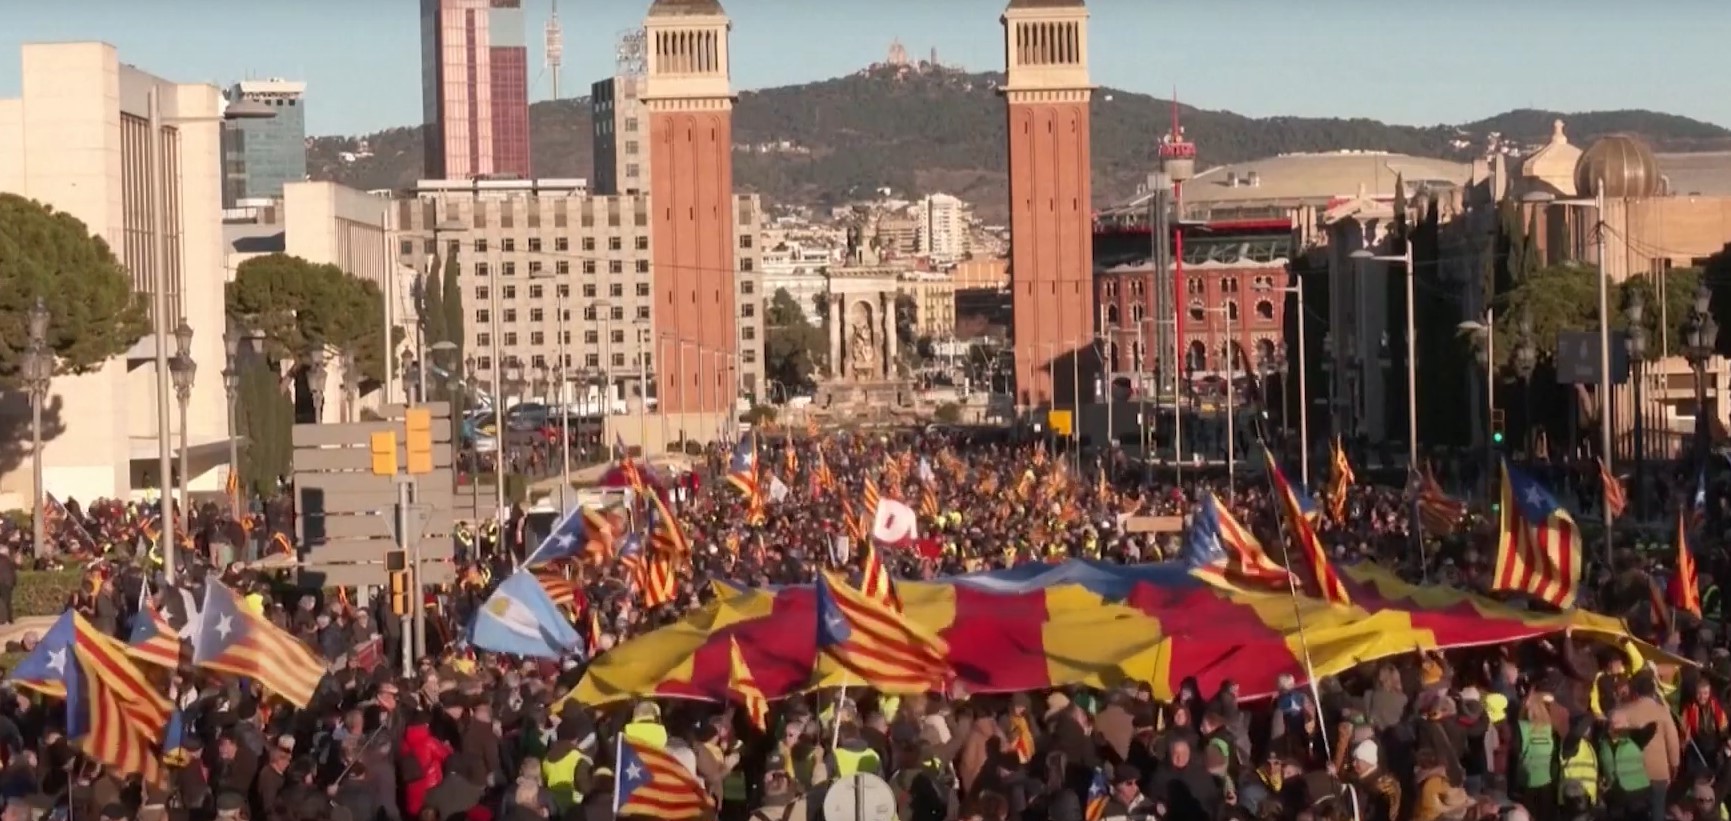 Mii de separatiști catalani fac apel pentru independența Cataloniei înainte de summitul Spania-Franța